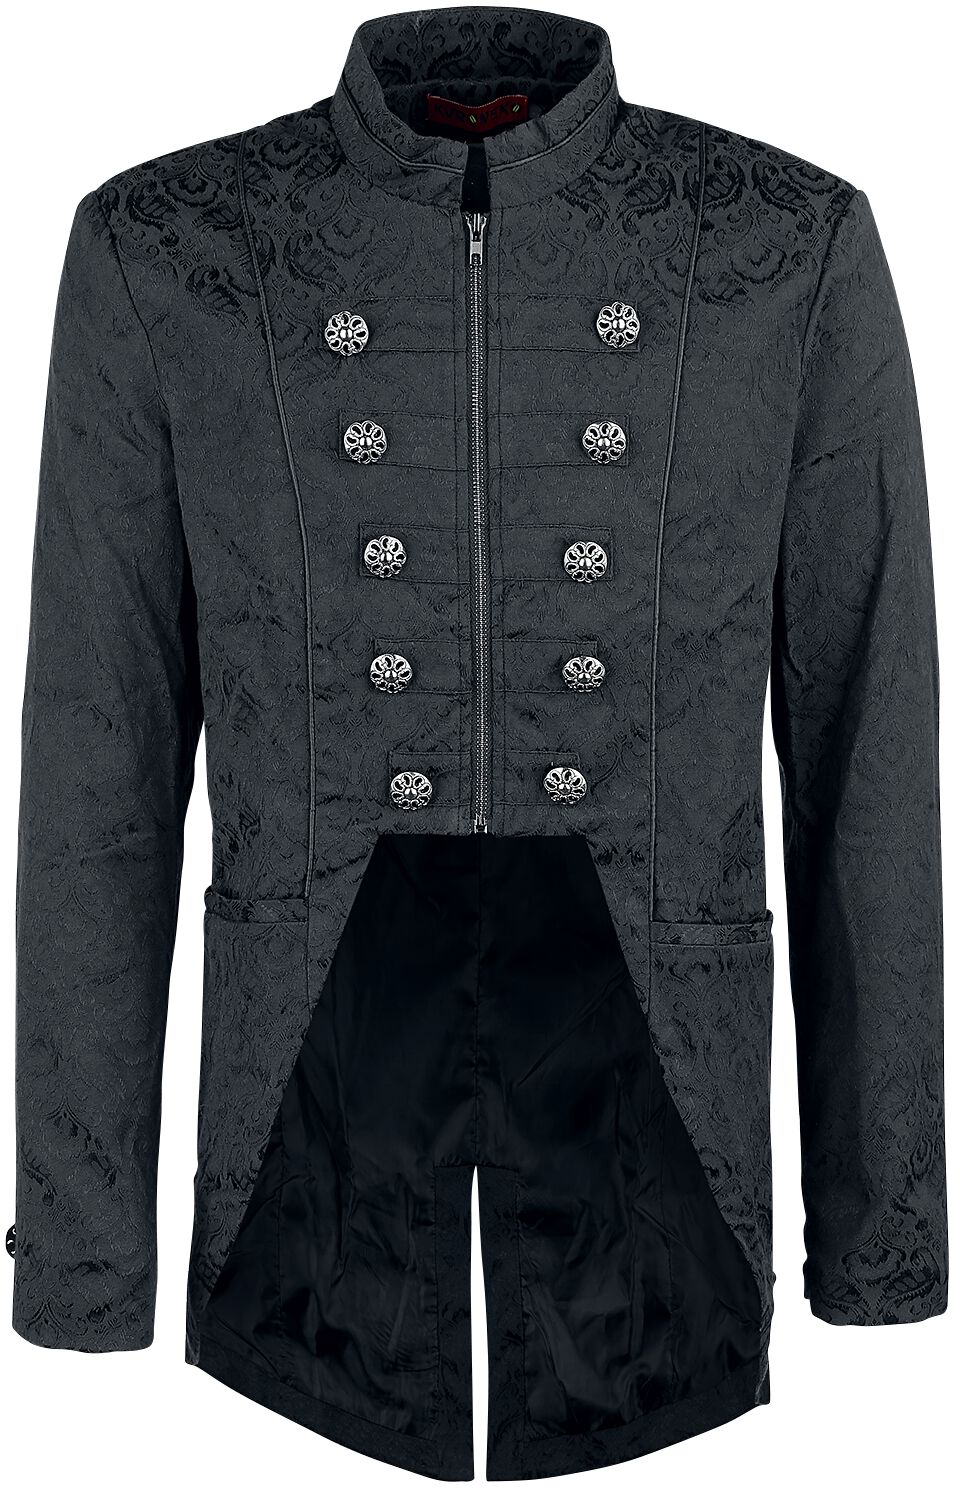 Victorian Coat Army Coat Buy online now